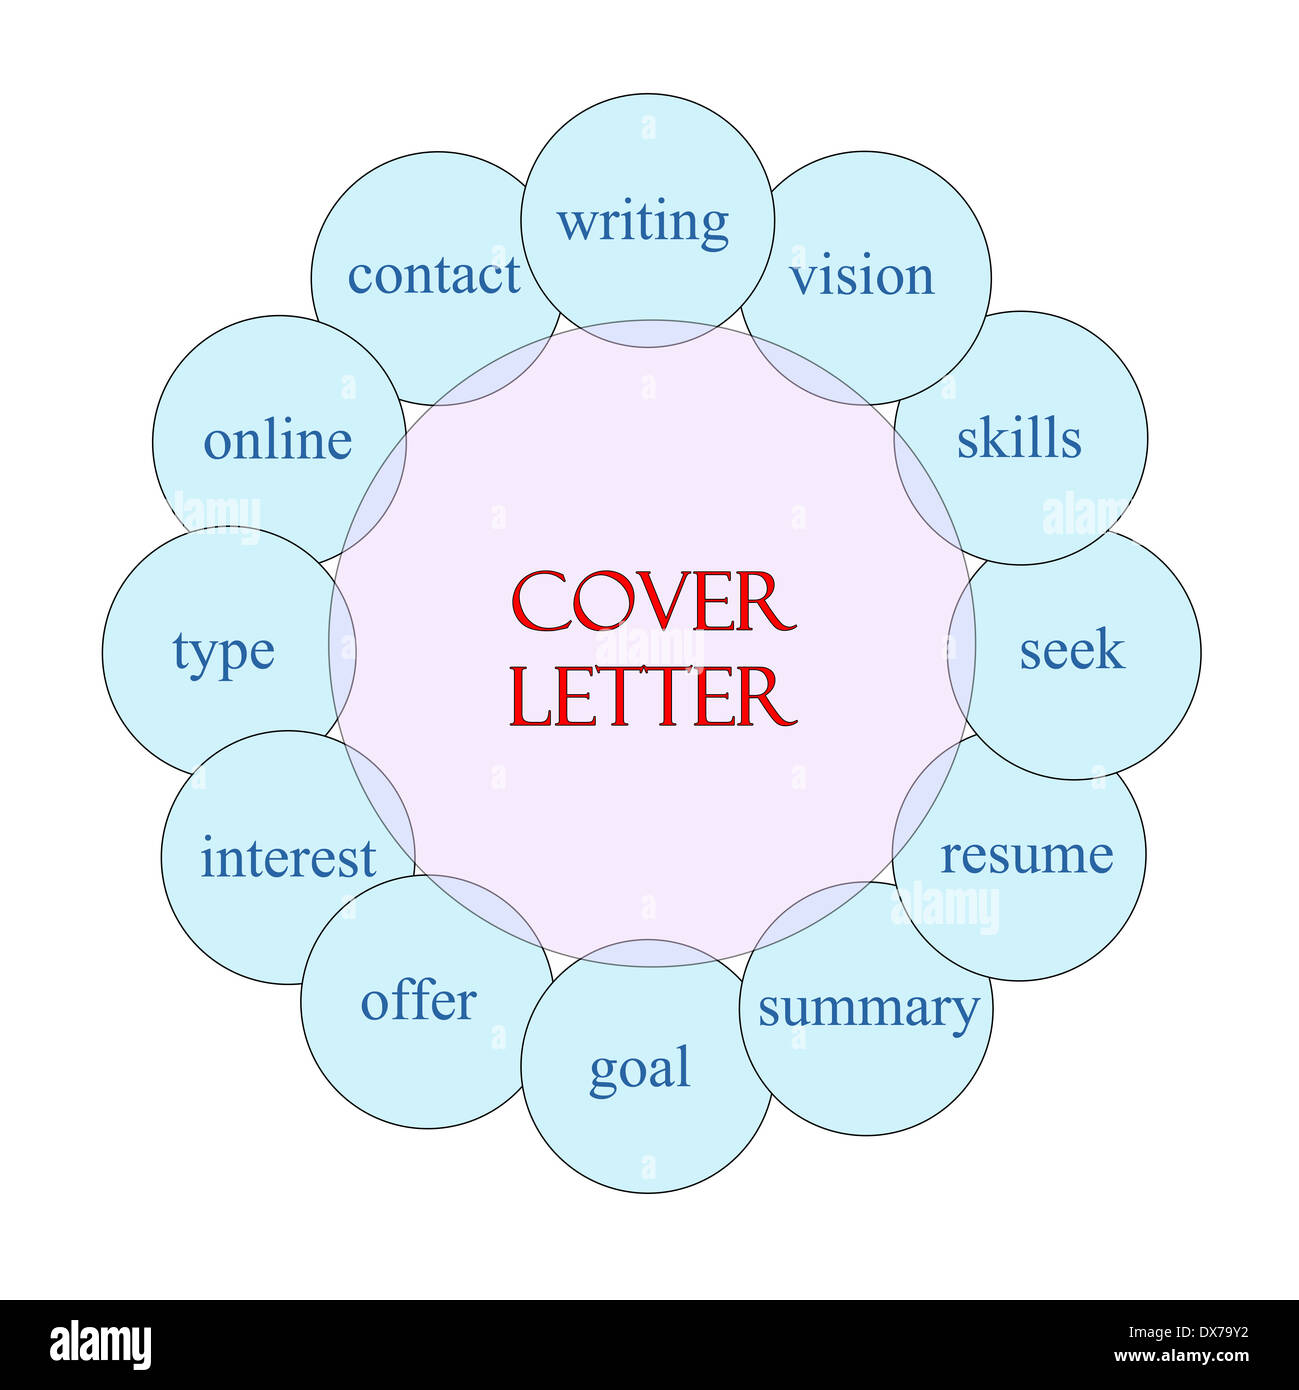 Cover Letter concetto diagramma circolare in rosa e in blu con grande come i termini e la scrittura, riepilogo riprendere più. Foto Stock